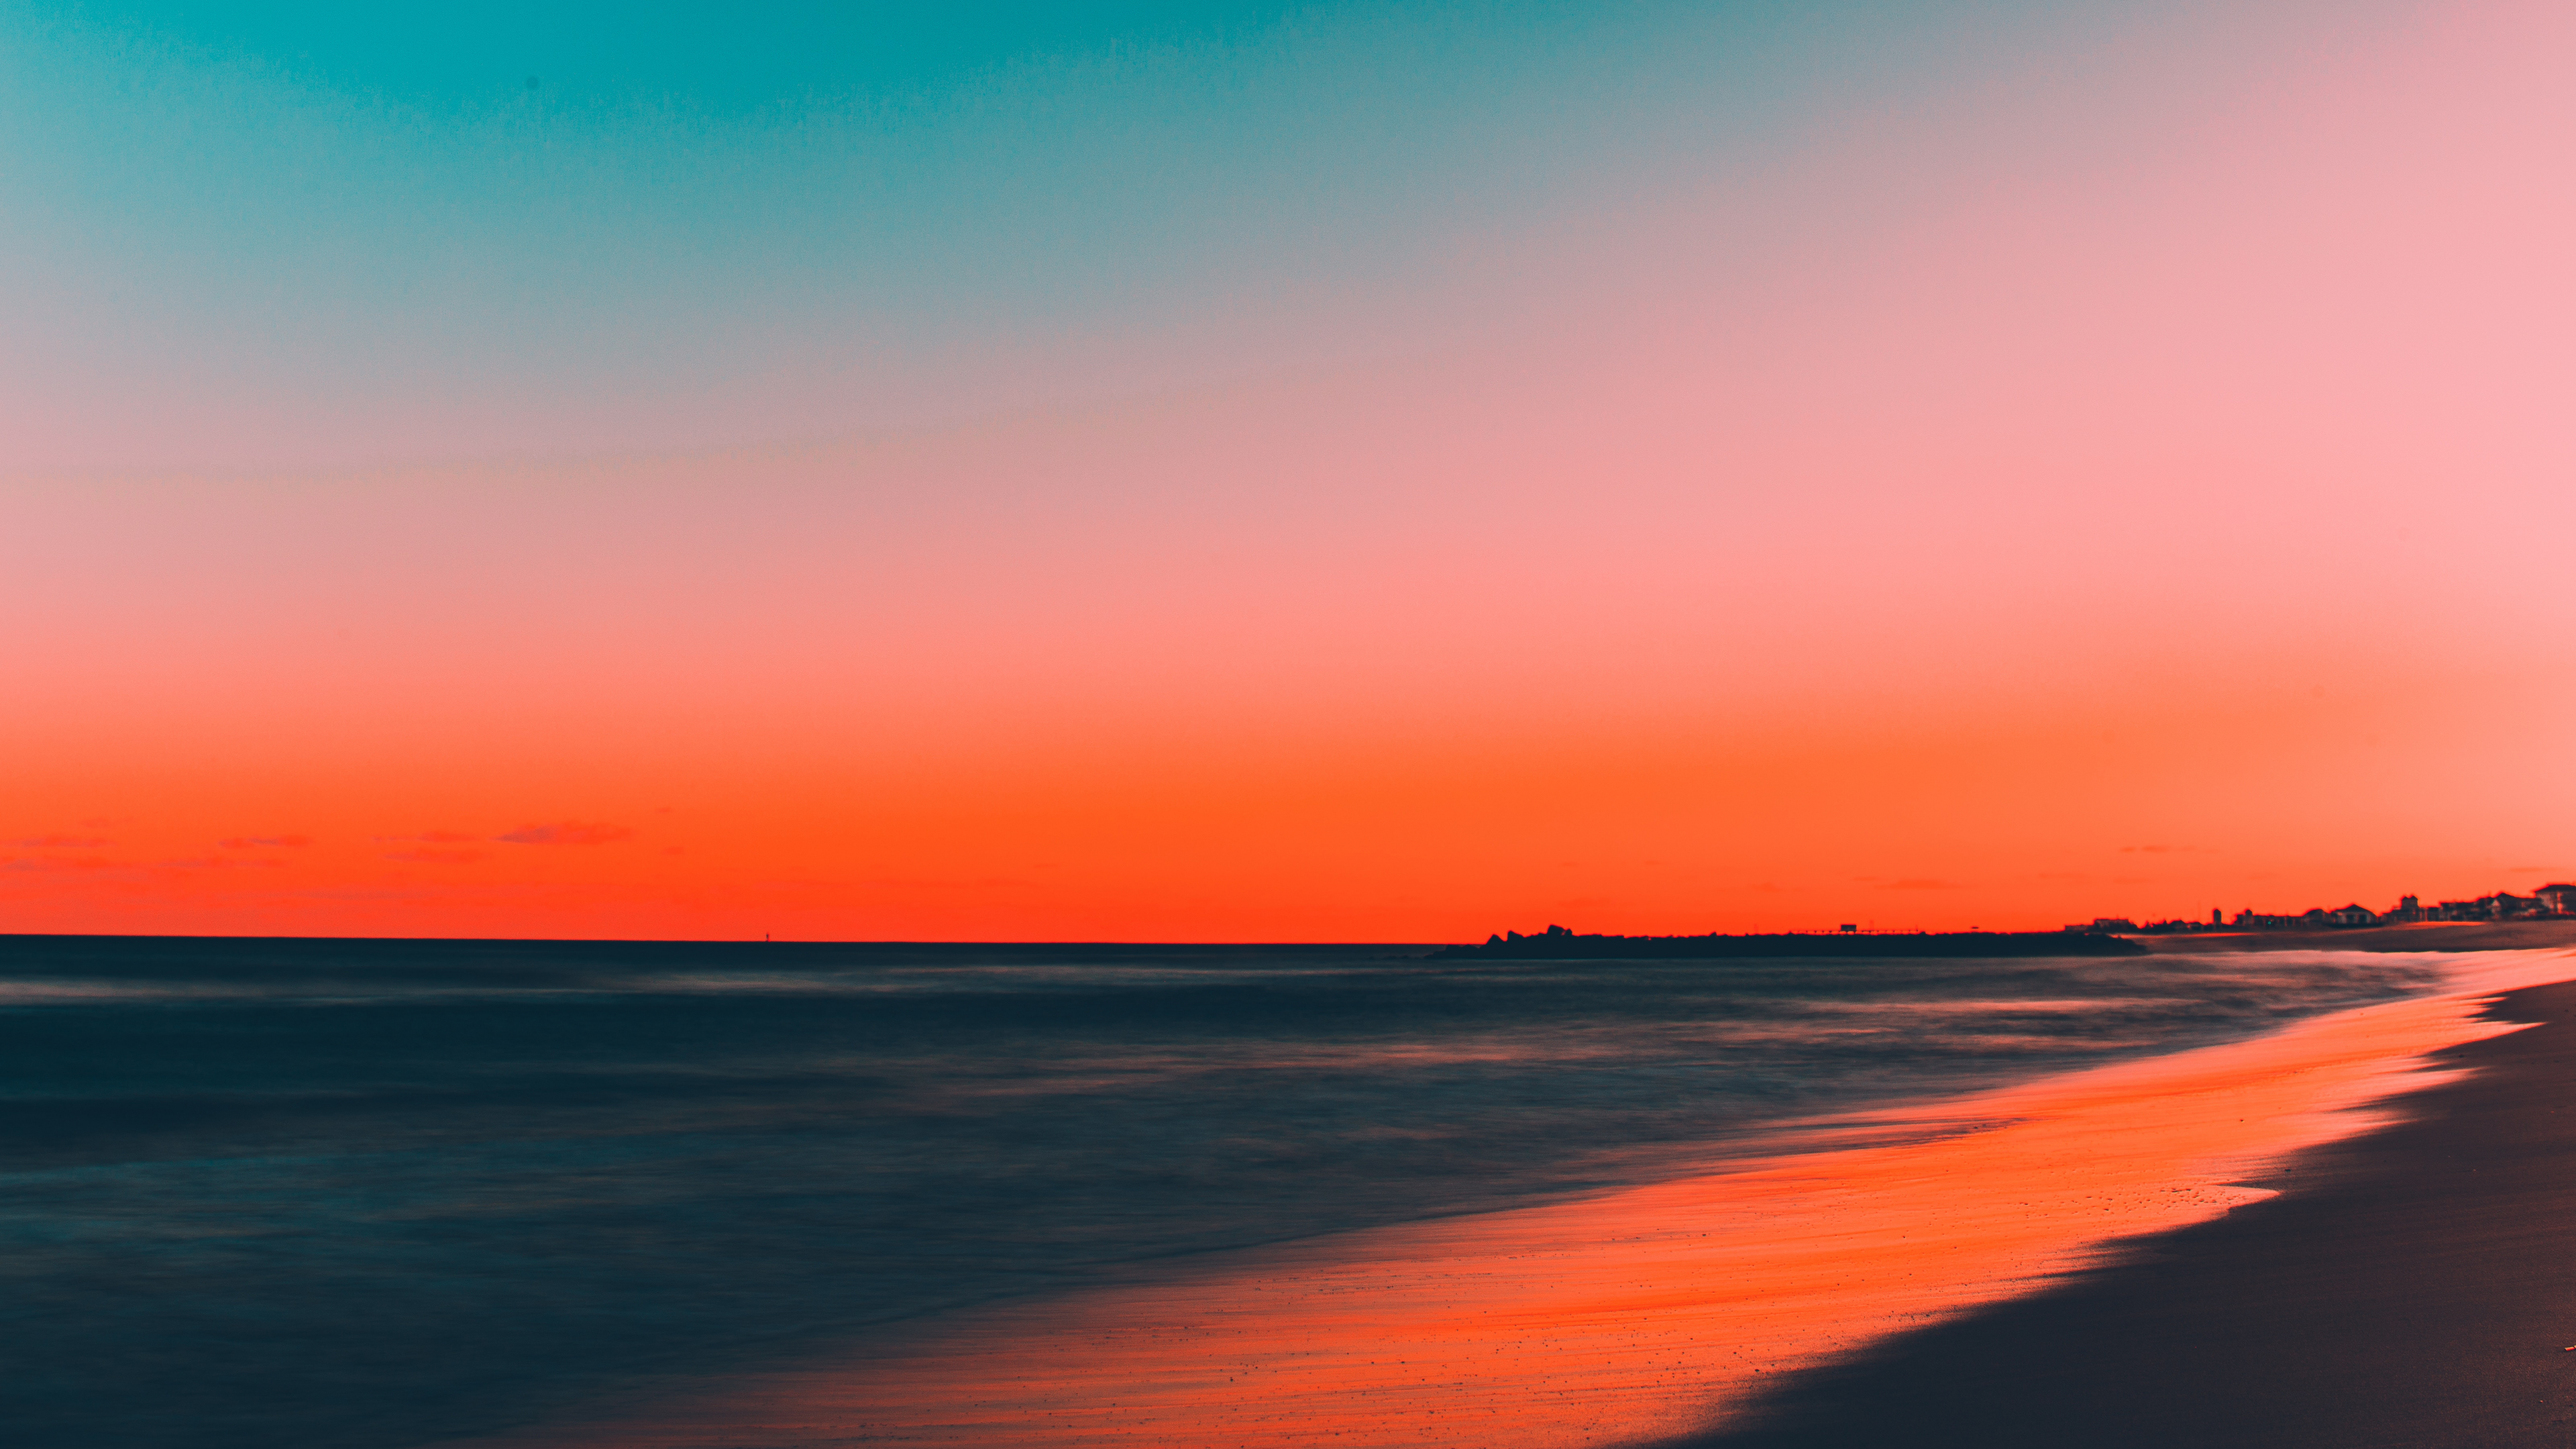 Download 3840x2160 Wallpaper Beach Clean Sky Skyline Sunset 4k Uhd